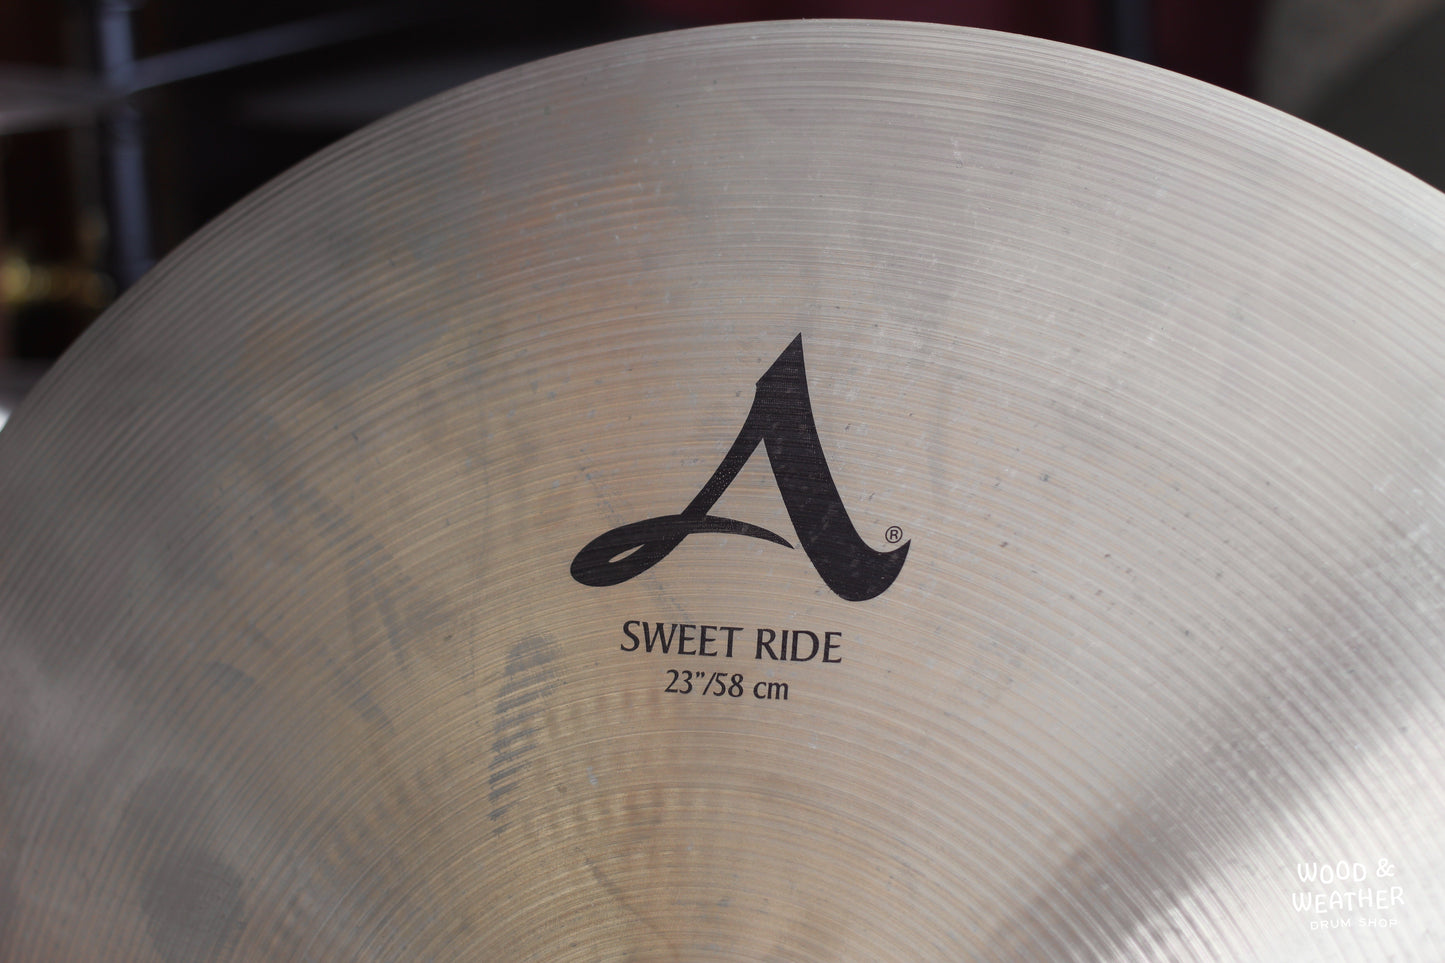 Used Zildjian 23" A Sweet Ride Cymbal 2970g